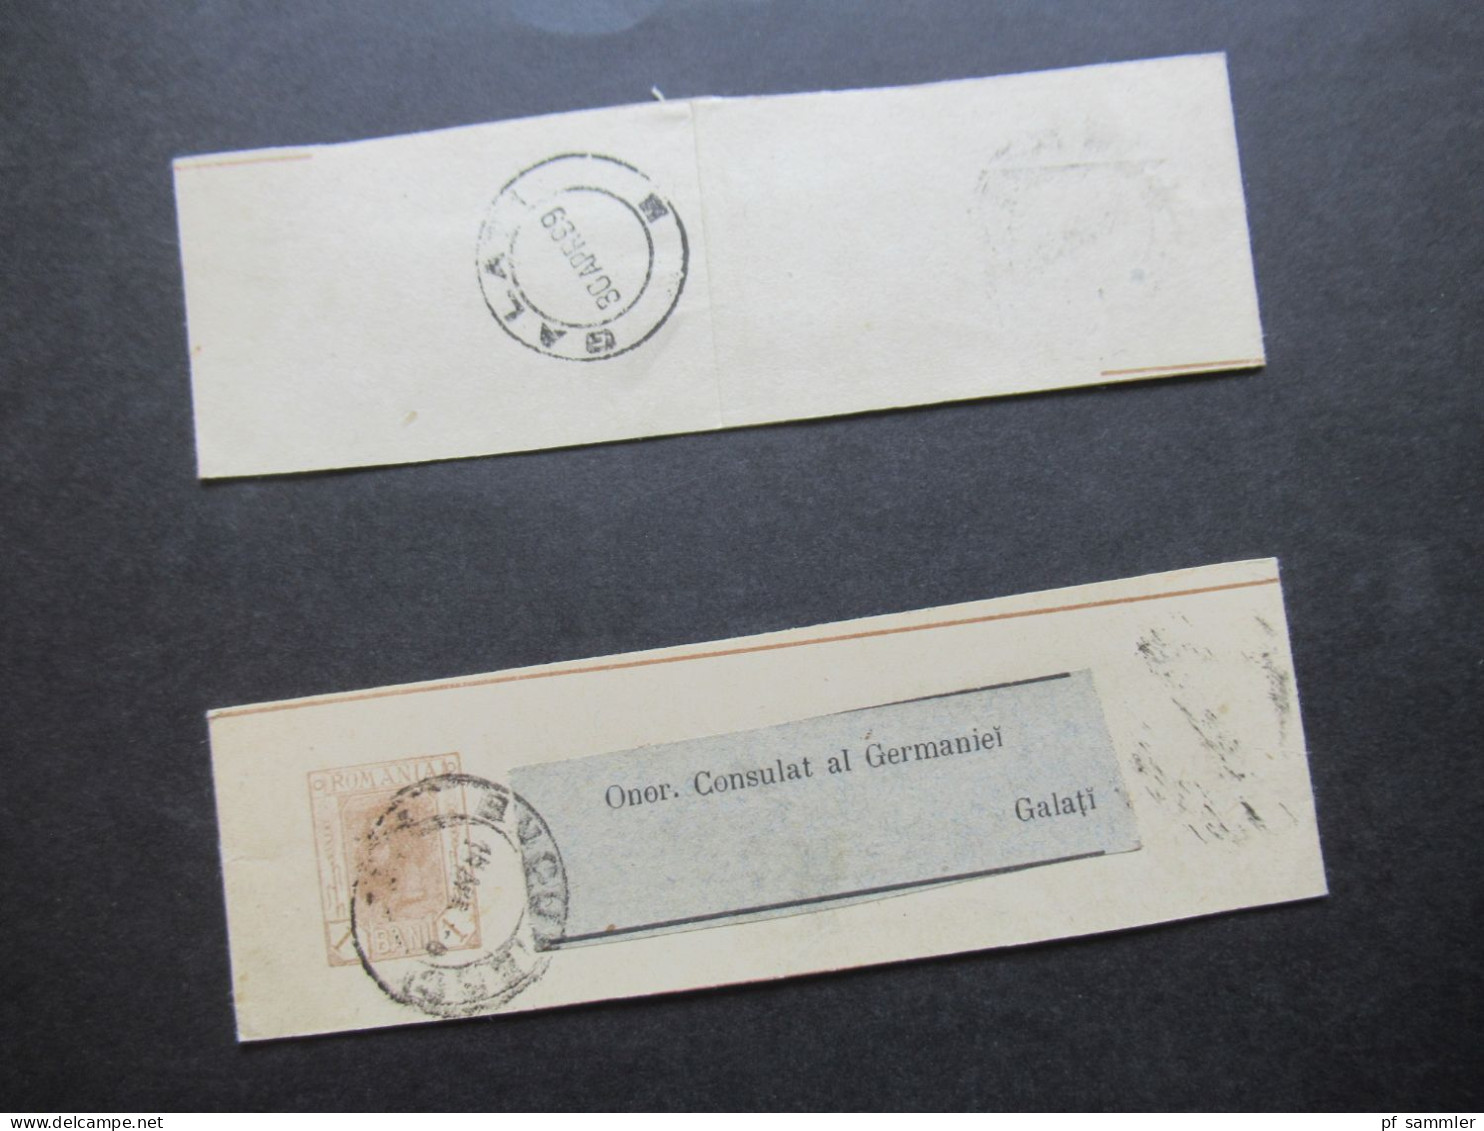 Rumänien 1899 Ganzsachen / 2x Streifband Mit Adressaufkleber Onor. Consulat Al Germaniei Galati - Postal Stationery